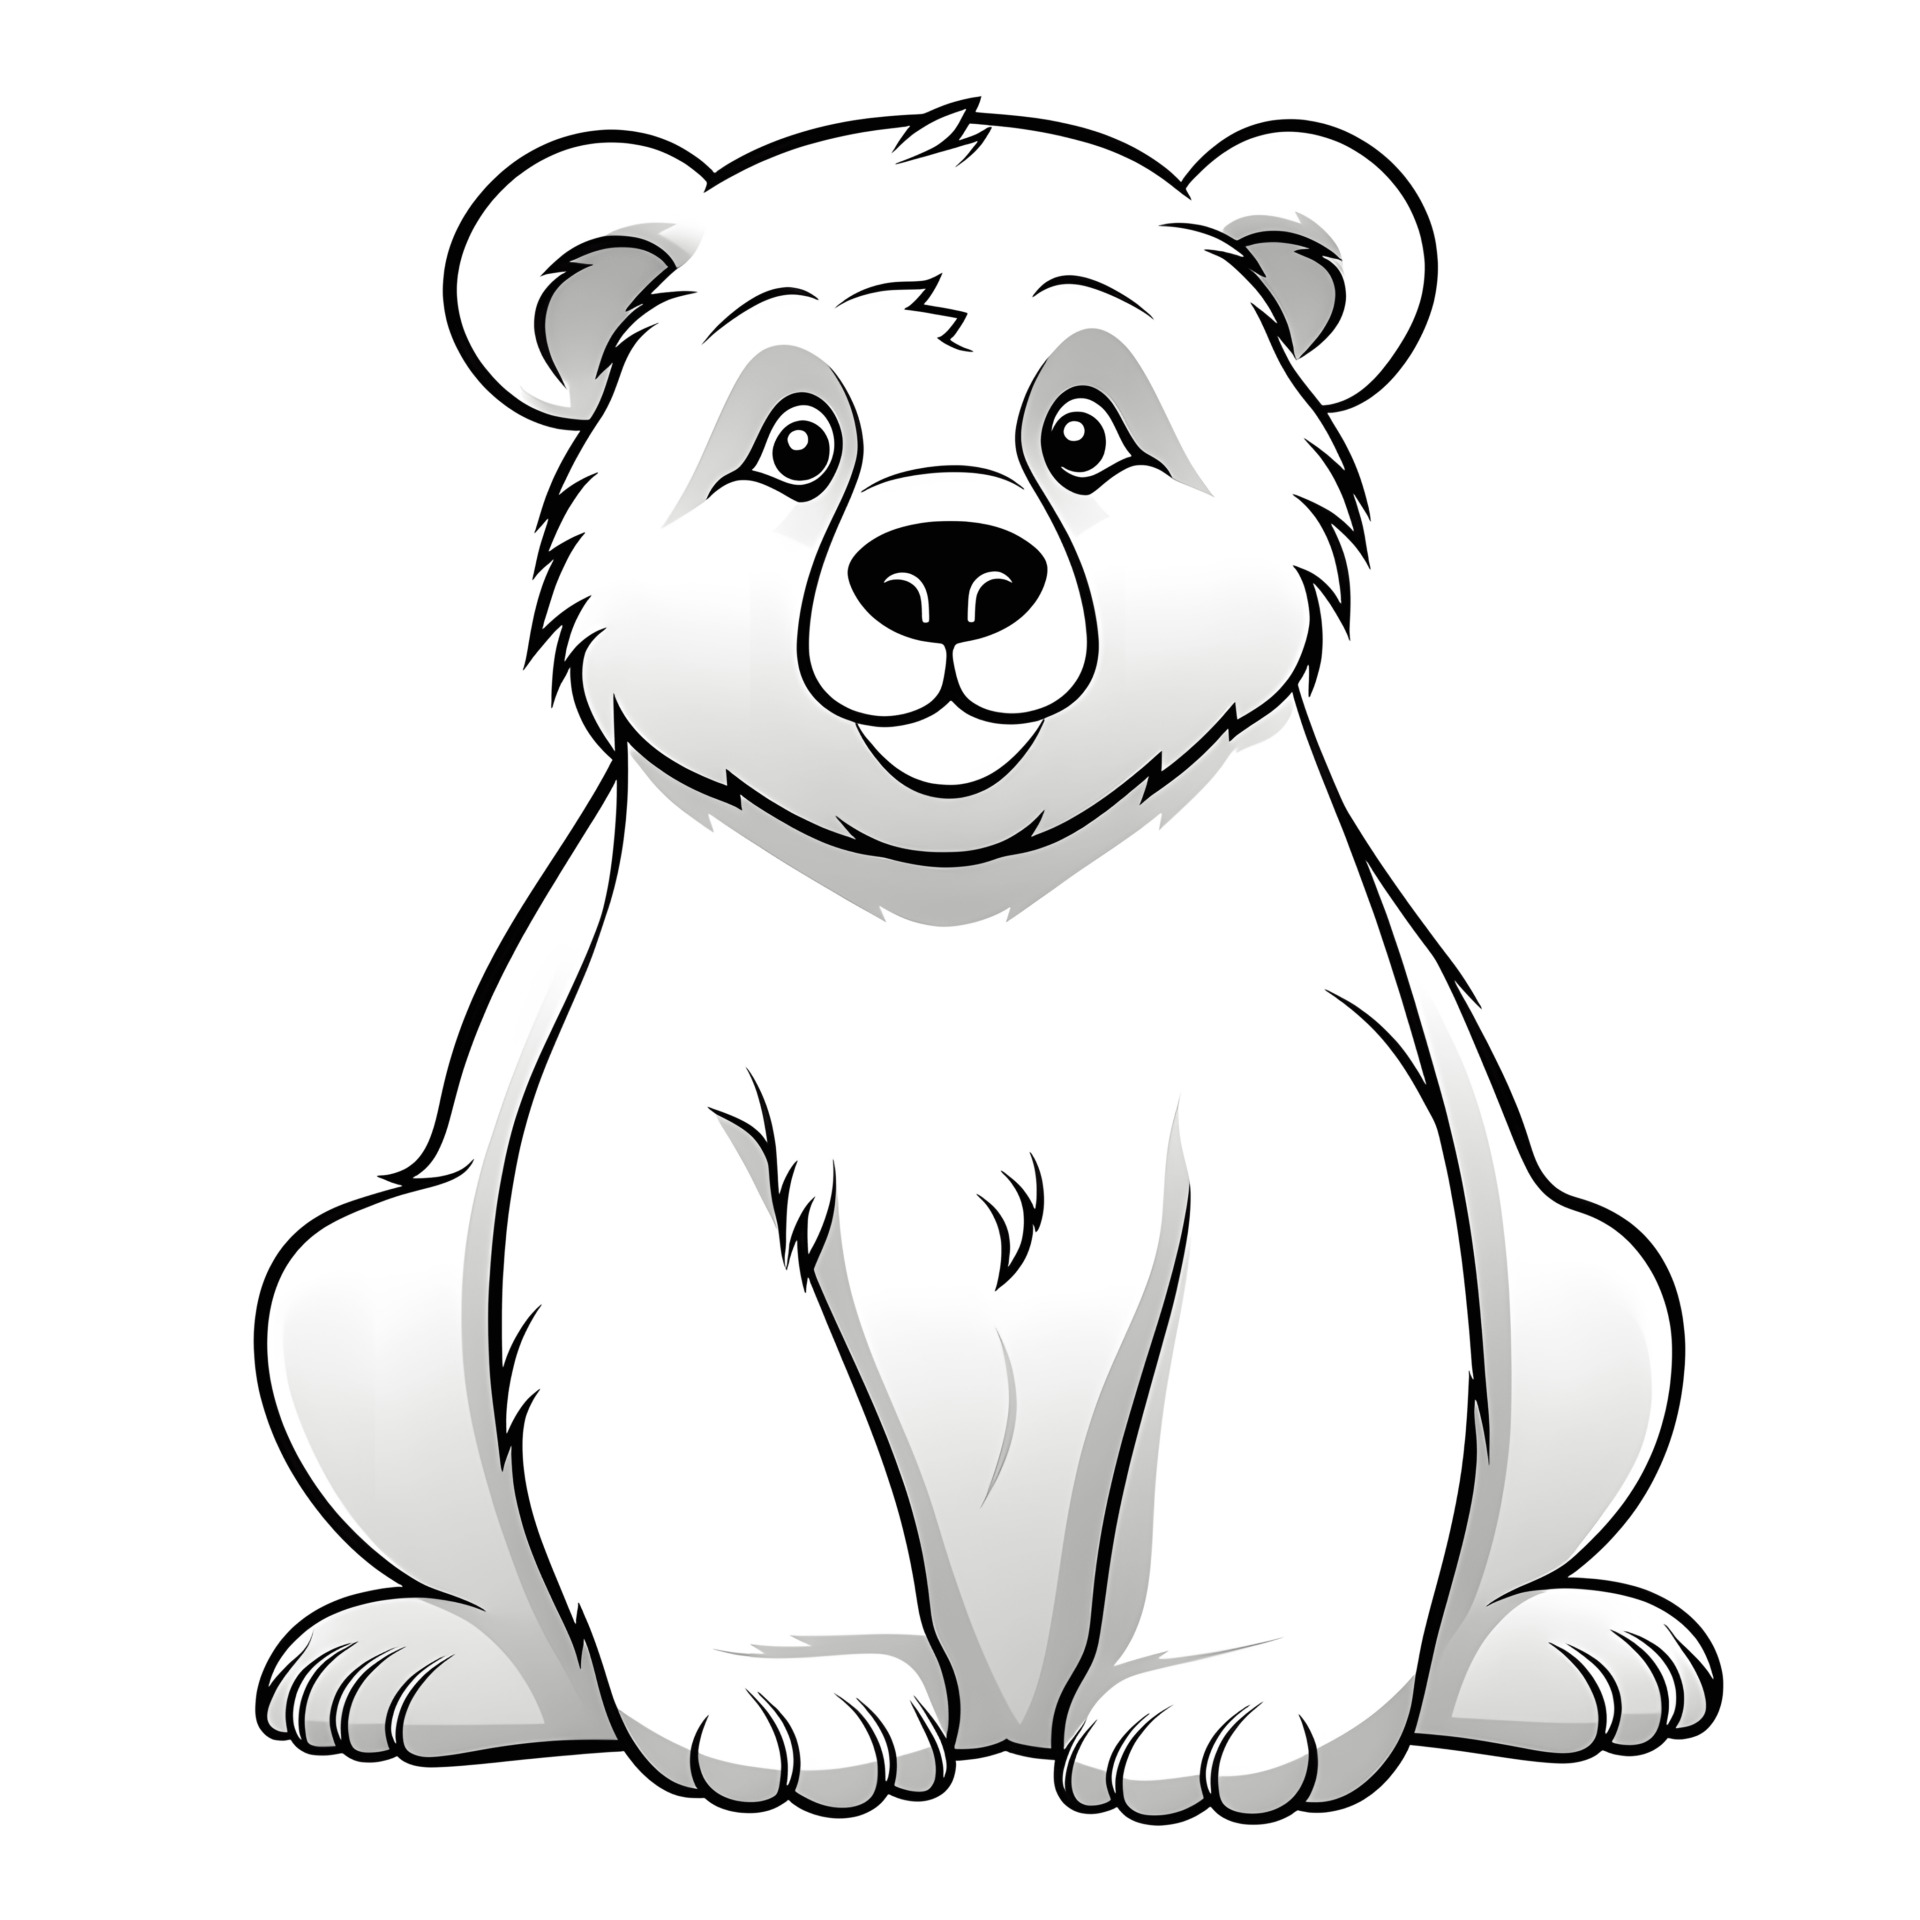 Ein sehr einfacher Cartoon-Bär in einem Malbuch für Kinder